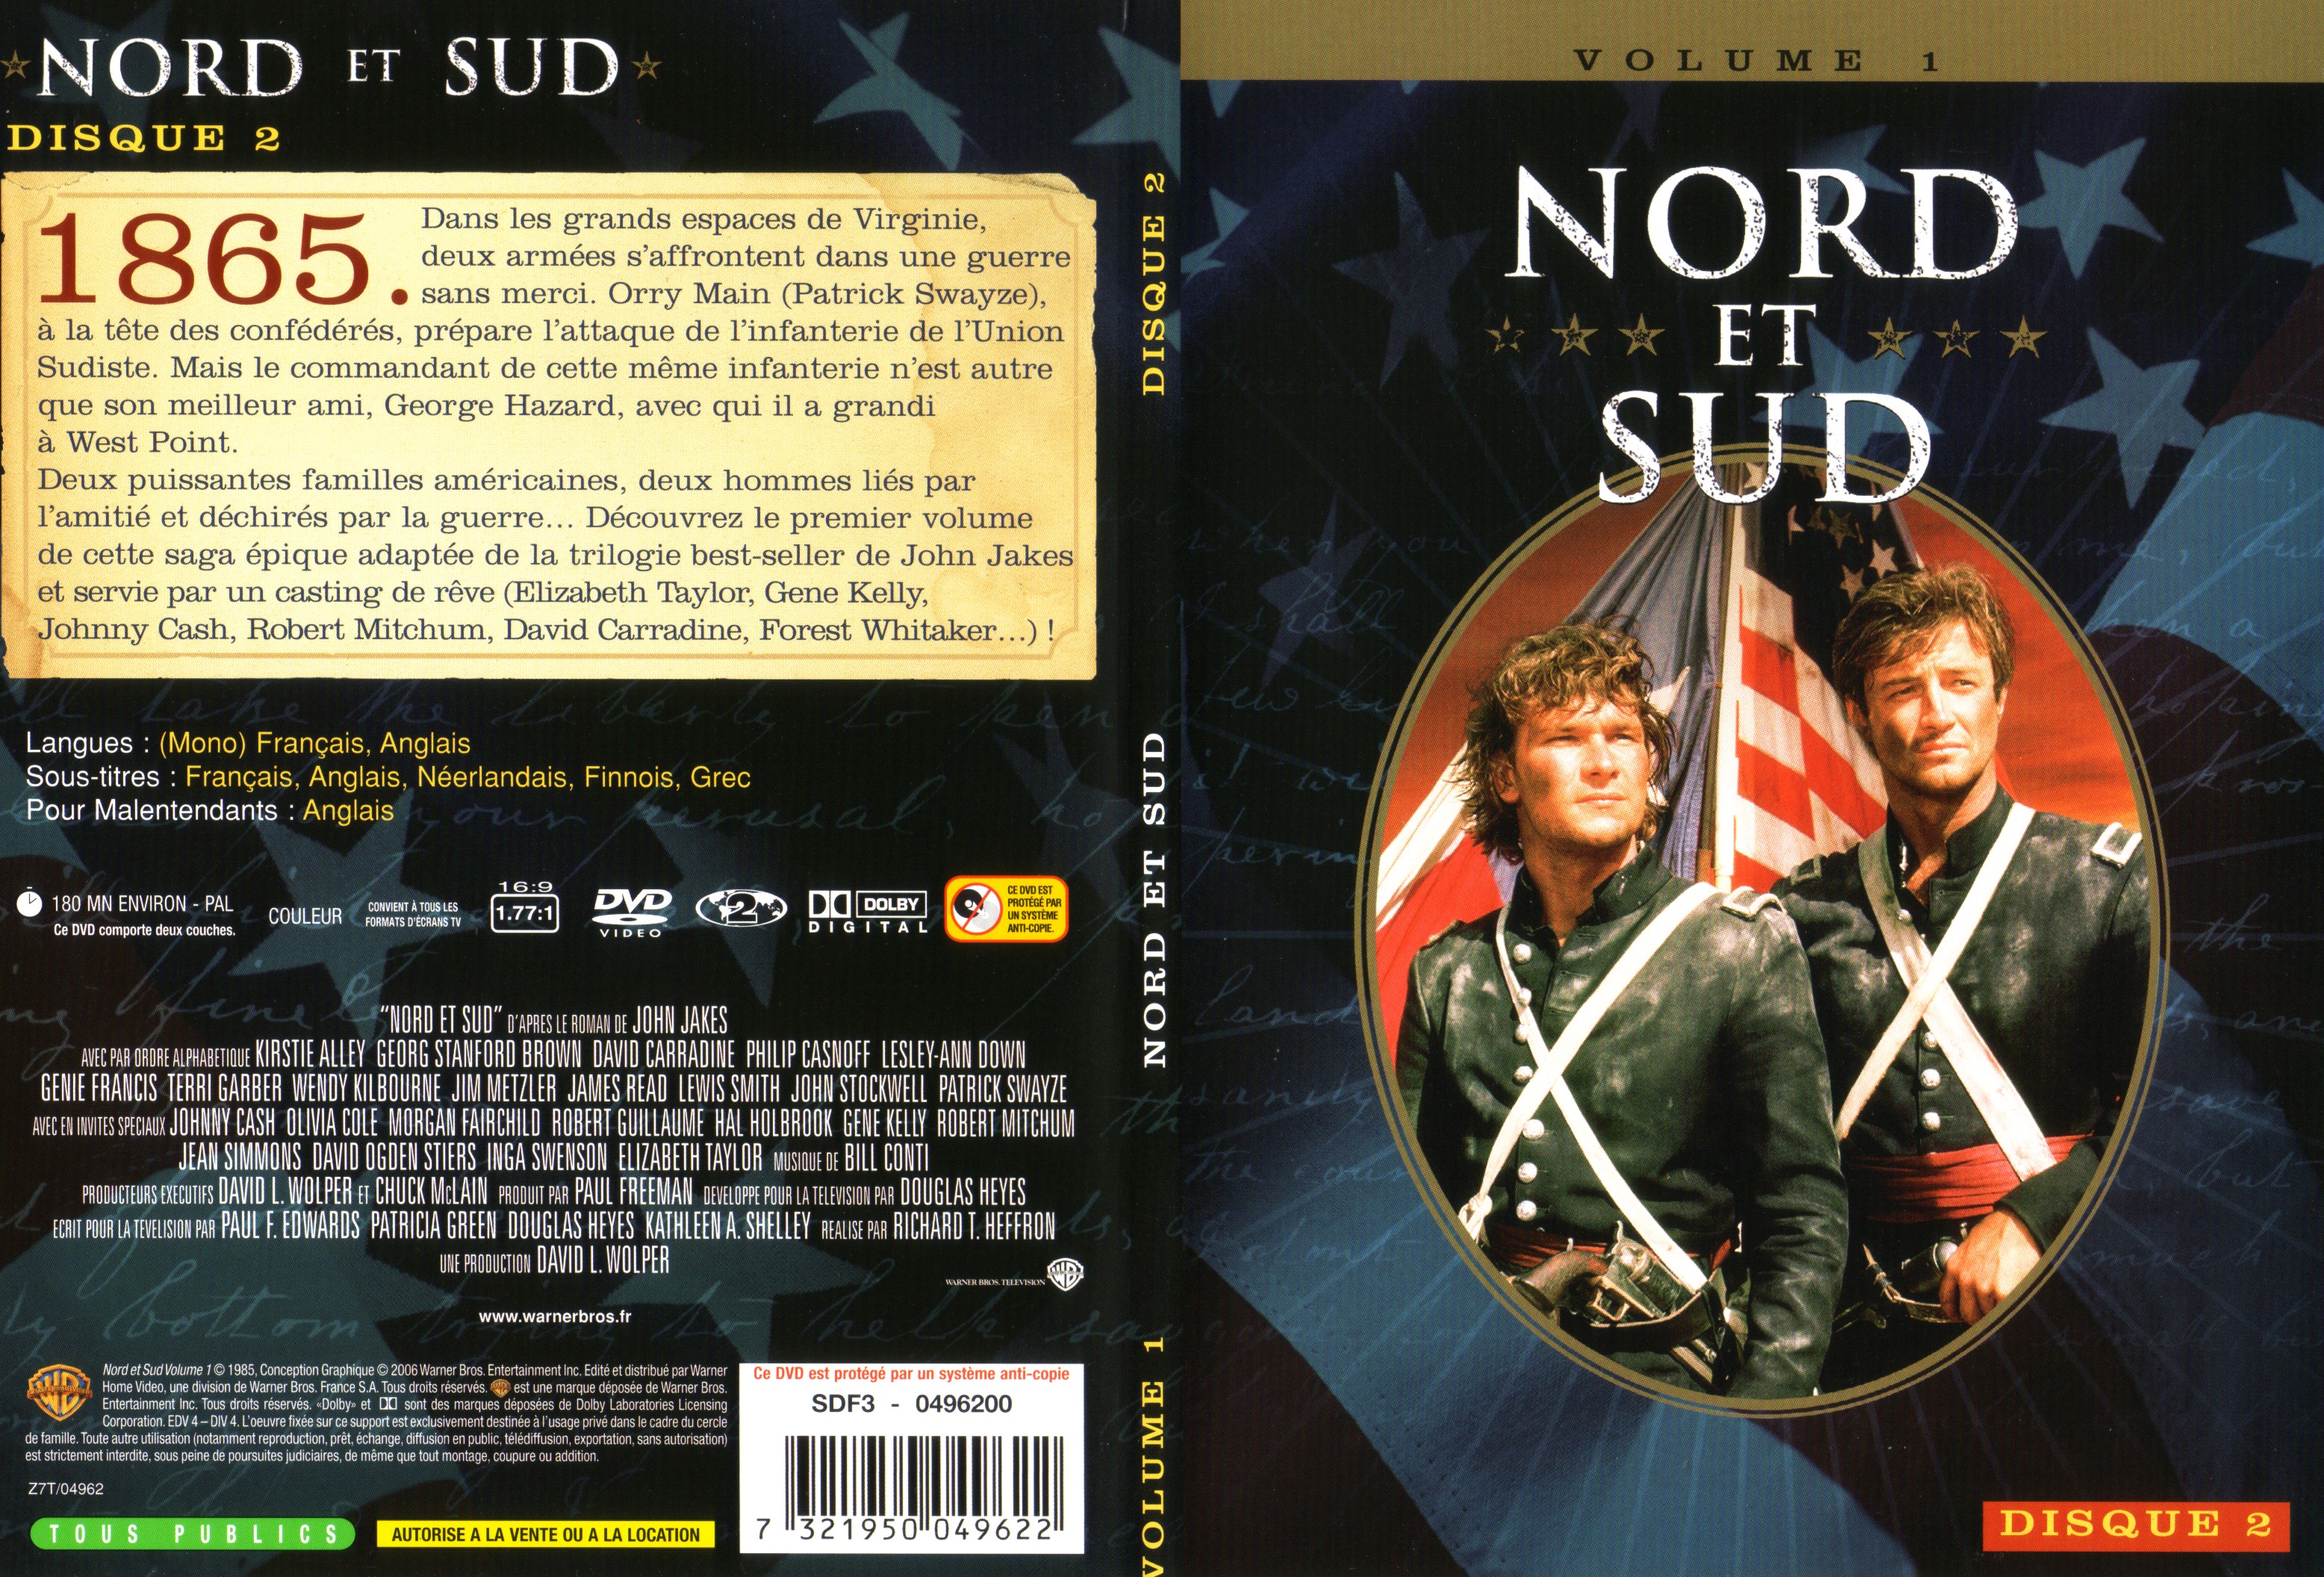 Jaquette DVD Nord et sud vol 1 dvd 2 v2